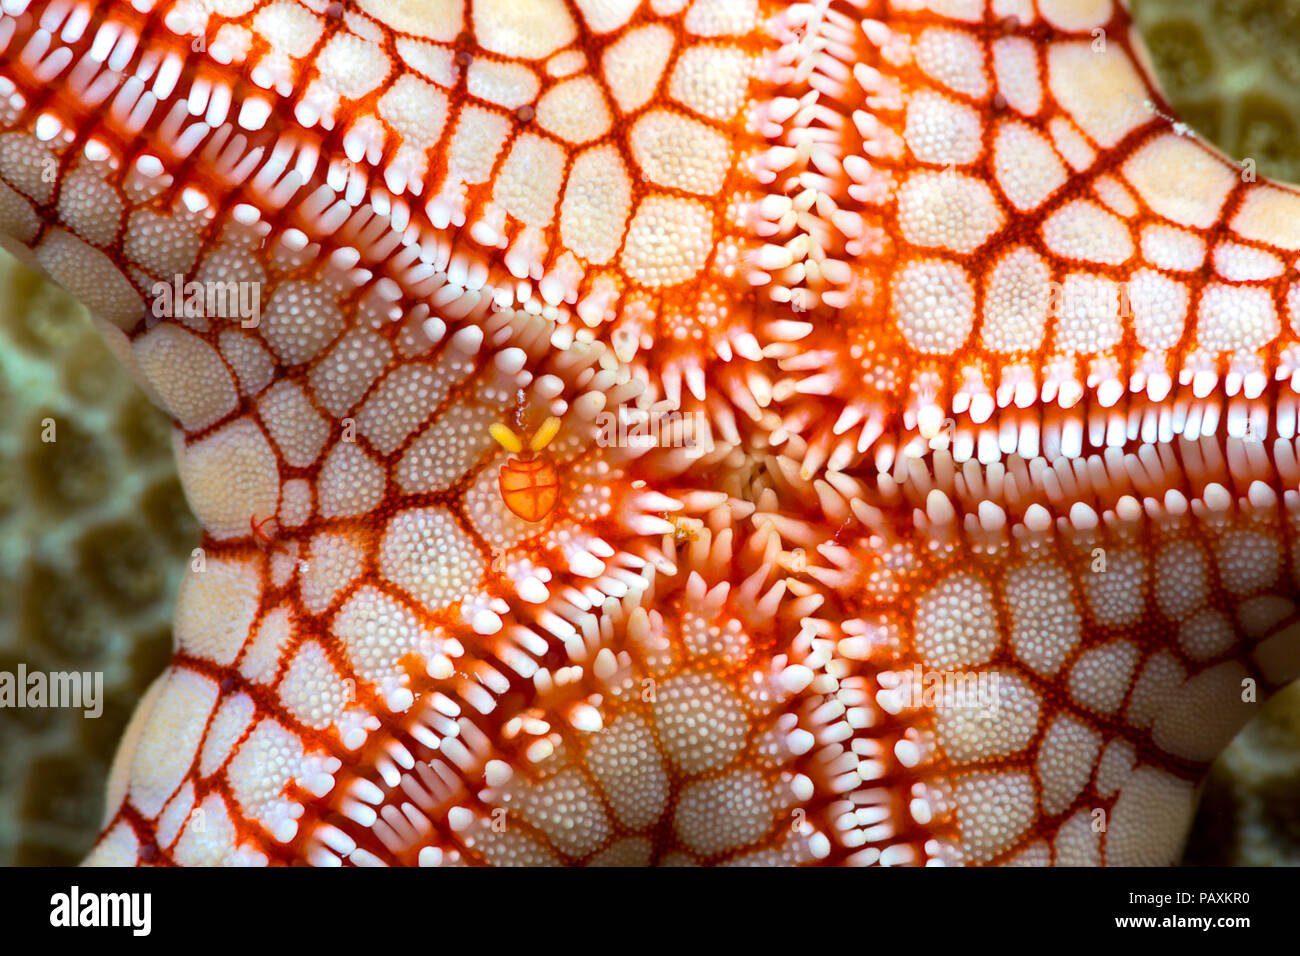 Una femmina copepod simbiotici, Stellicola sp. può essere visto solo a sinistra del centro su questa collana seastar, Fromia monilis, Yap, Micronesia. Foto Stock